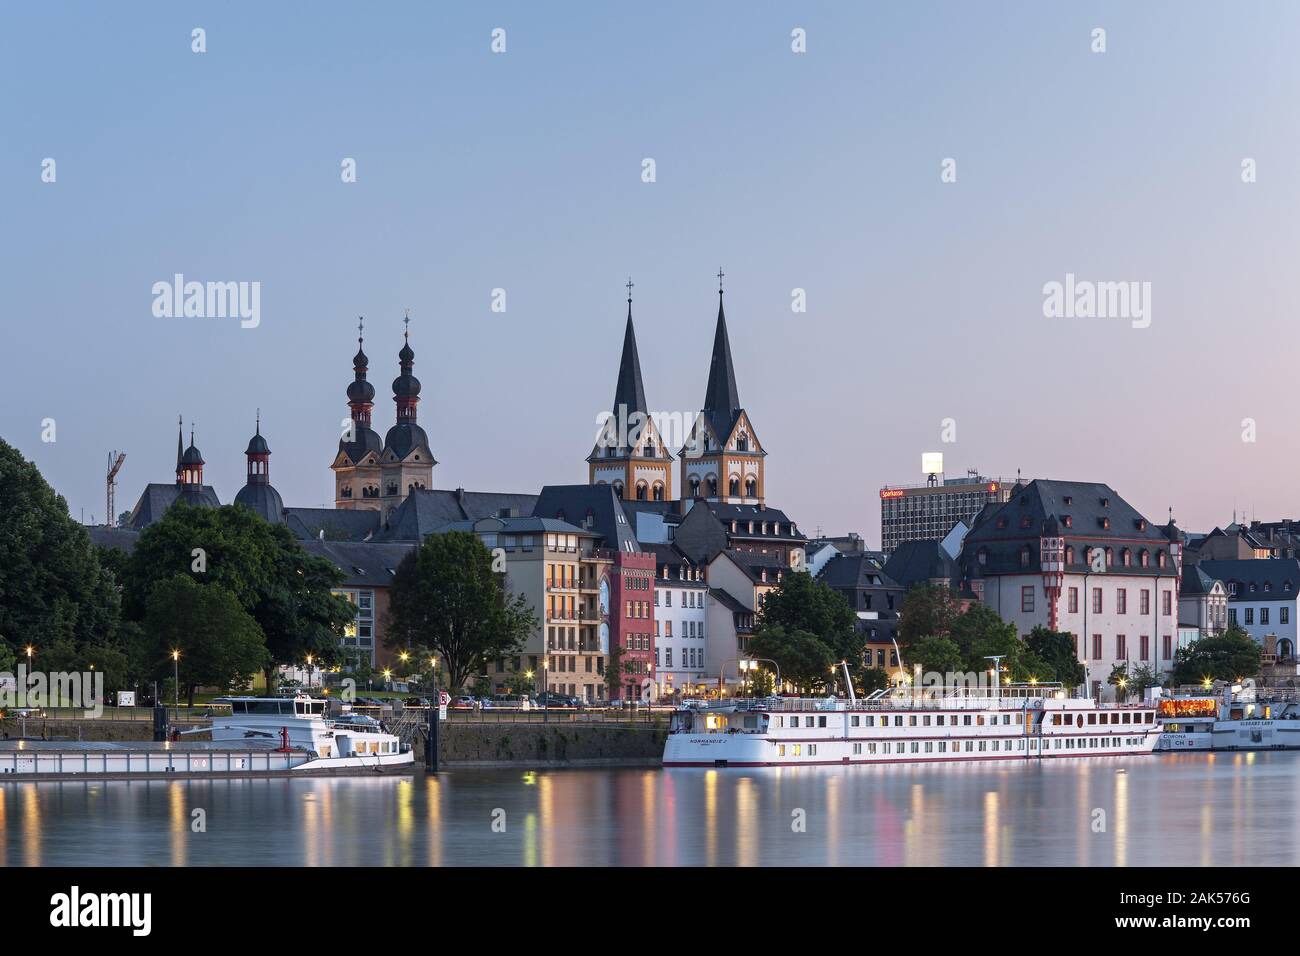 Koblenz: Altstadtsilhouette mit Moselufer und Kreuzfahrtschiffen am Deutschen Eck, Rhein | usage worldwide Stock Photo